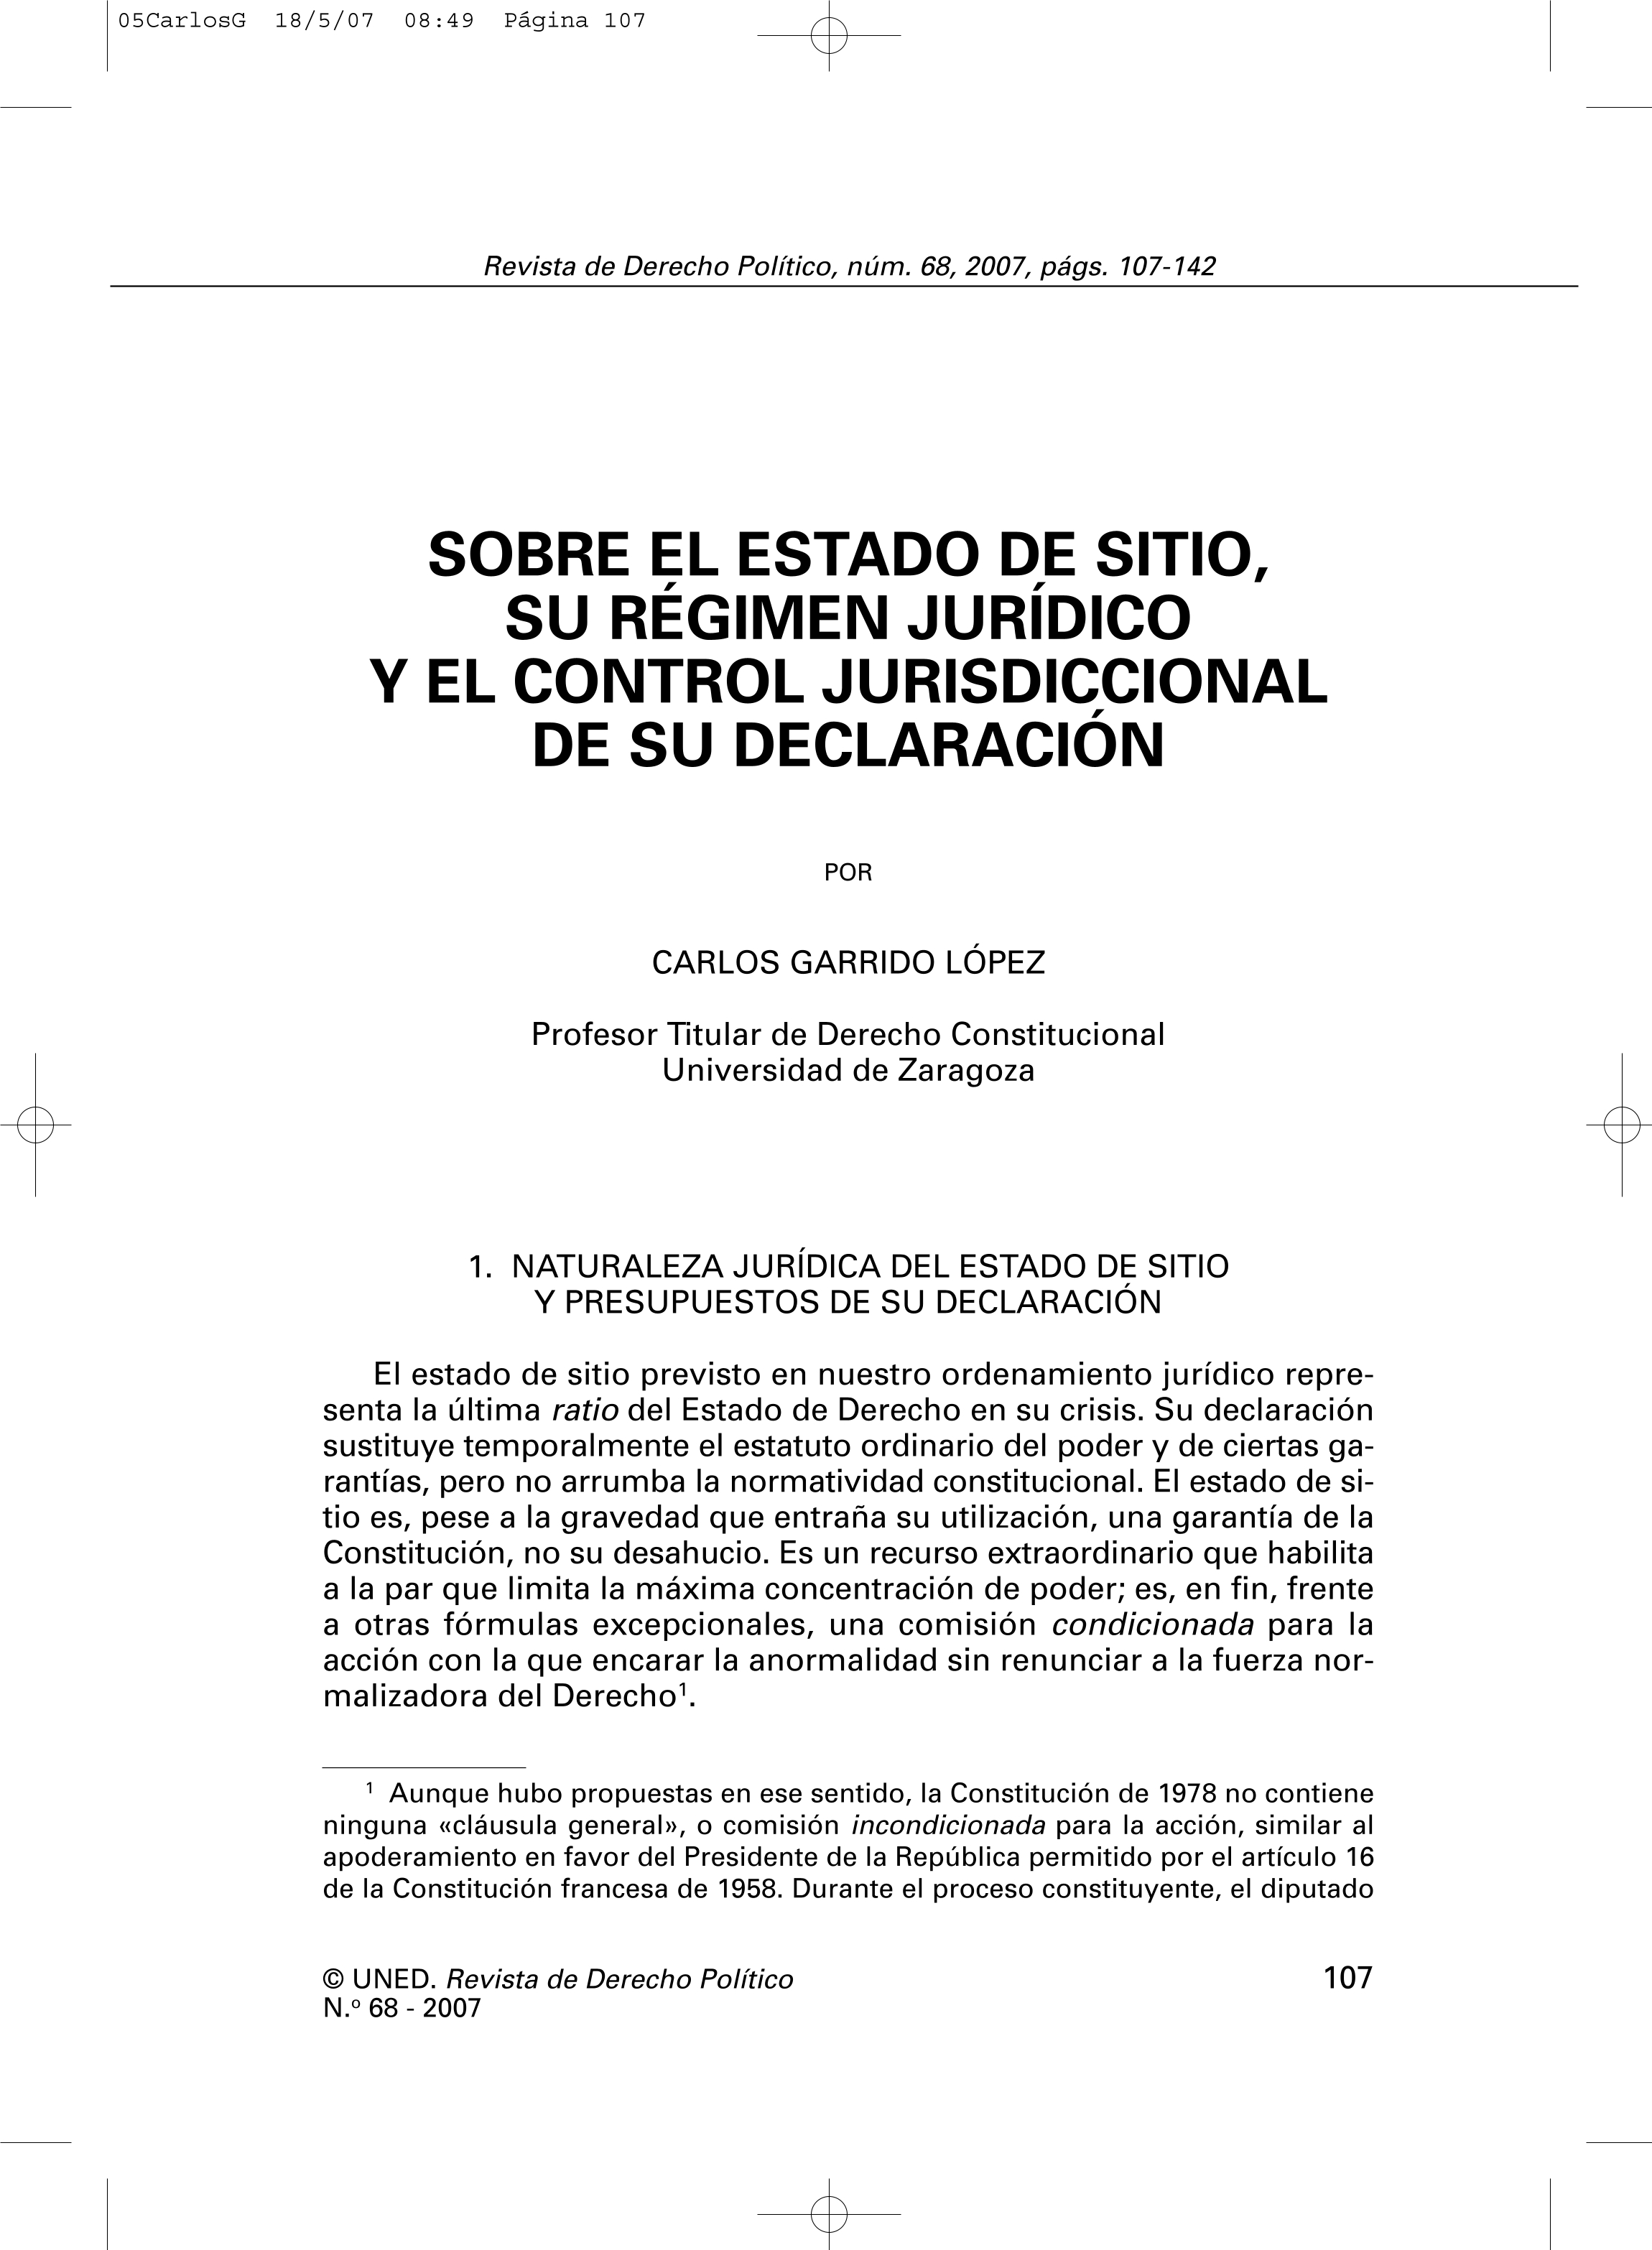 Sobre el Estado de Sitio, su régimen jurídico y el control jurisdiccional de su declaración